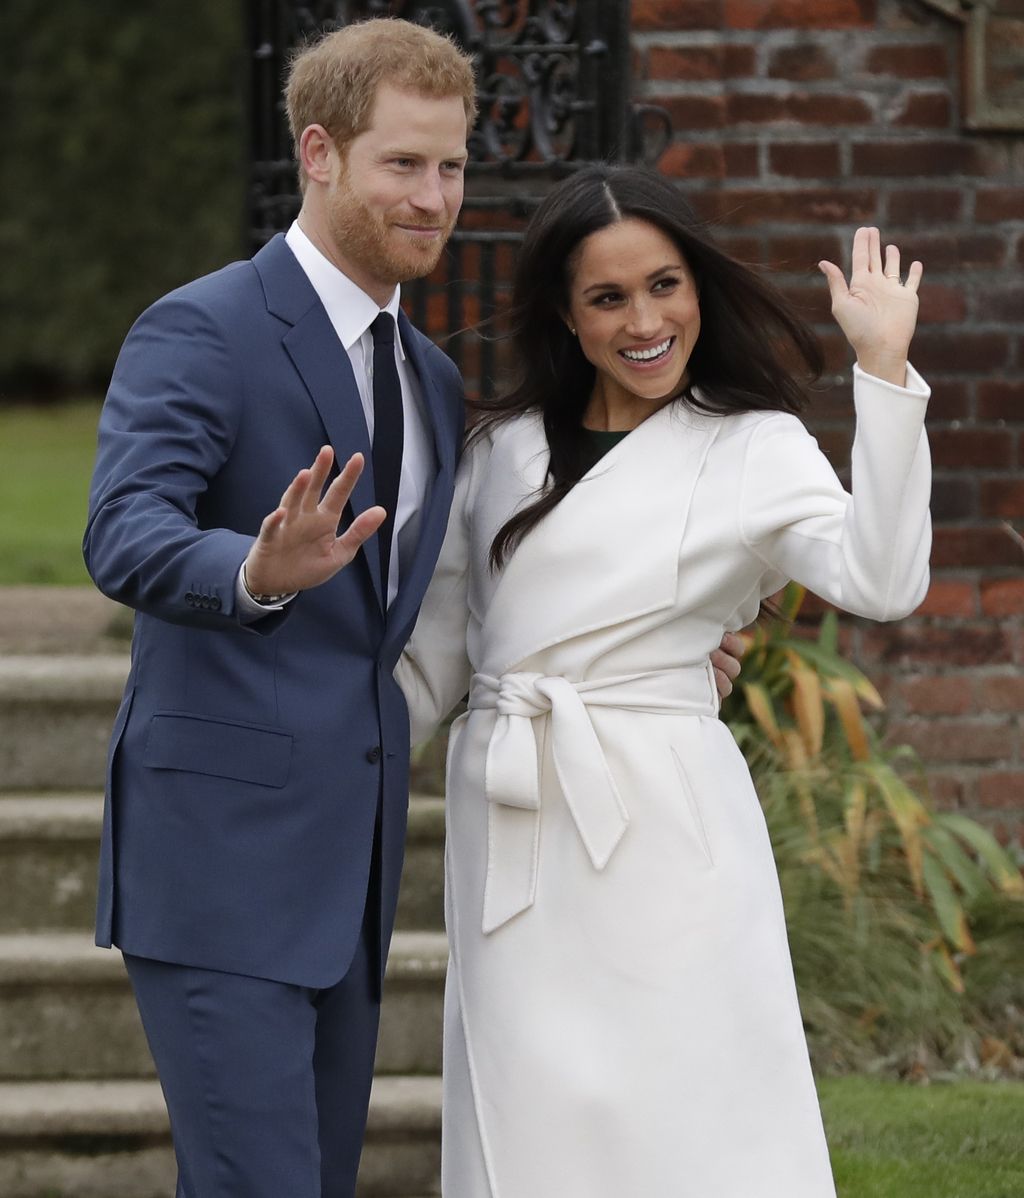 ¡Ya han posado! Los nervios y la felicidad de la comparecencia del príncipe Harry y Meghan Markle, en fotos